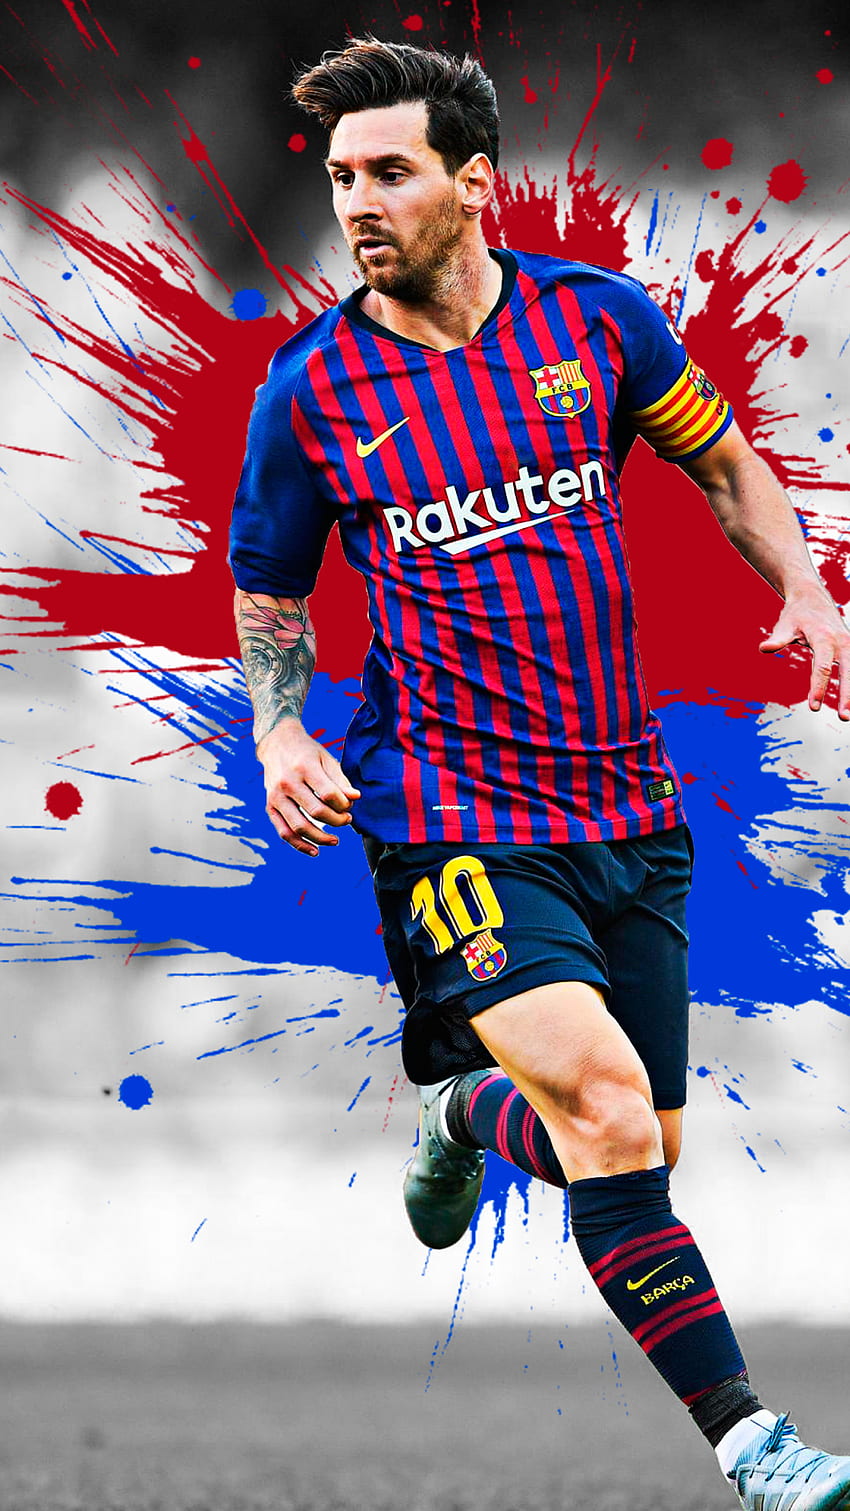 Ngắm nhìn ngôi sao hàng đầu Lionel Messi với những hình ảnh đẹp nhất, sắc nét nhất! Những pha tung hoành trên sân cỏ của anh ấy sẽ khiến bạn say đắm và cảm thấy hạnh phúc!